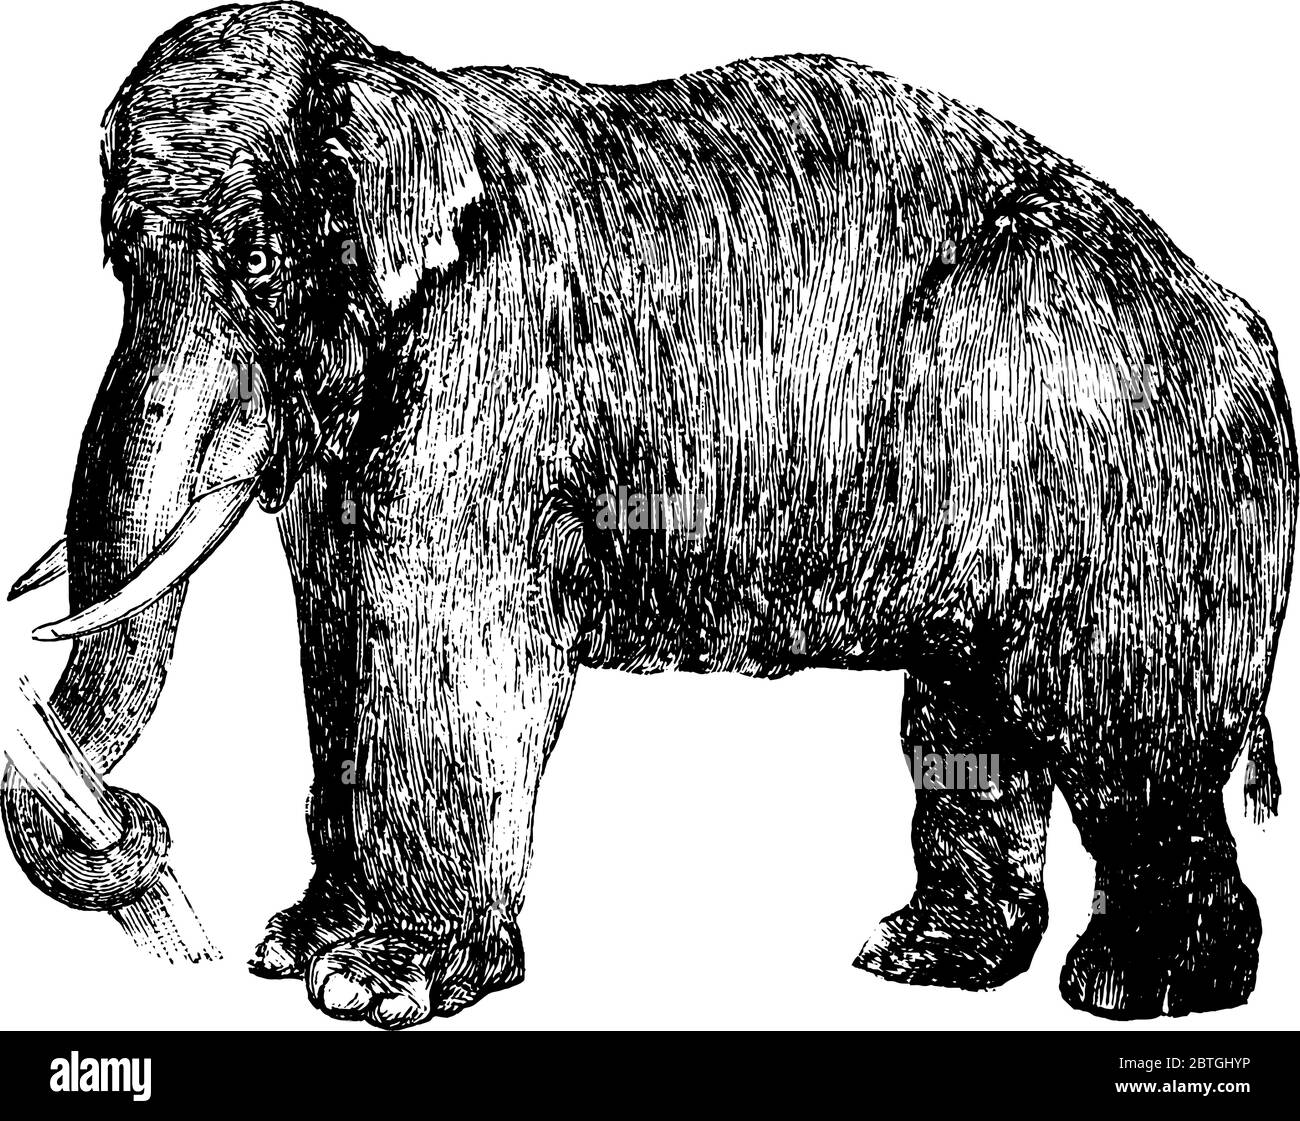 Éléphant, le grand mammifère avec un long tronc saisissant une bûche d'arbre, défenses utilisées comme armes, grandes oreilles et piliers comme les jambes, dessin de ligne vintage ou gravi Illustration de Vecteur